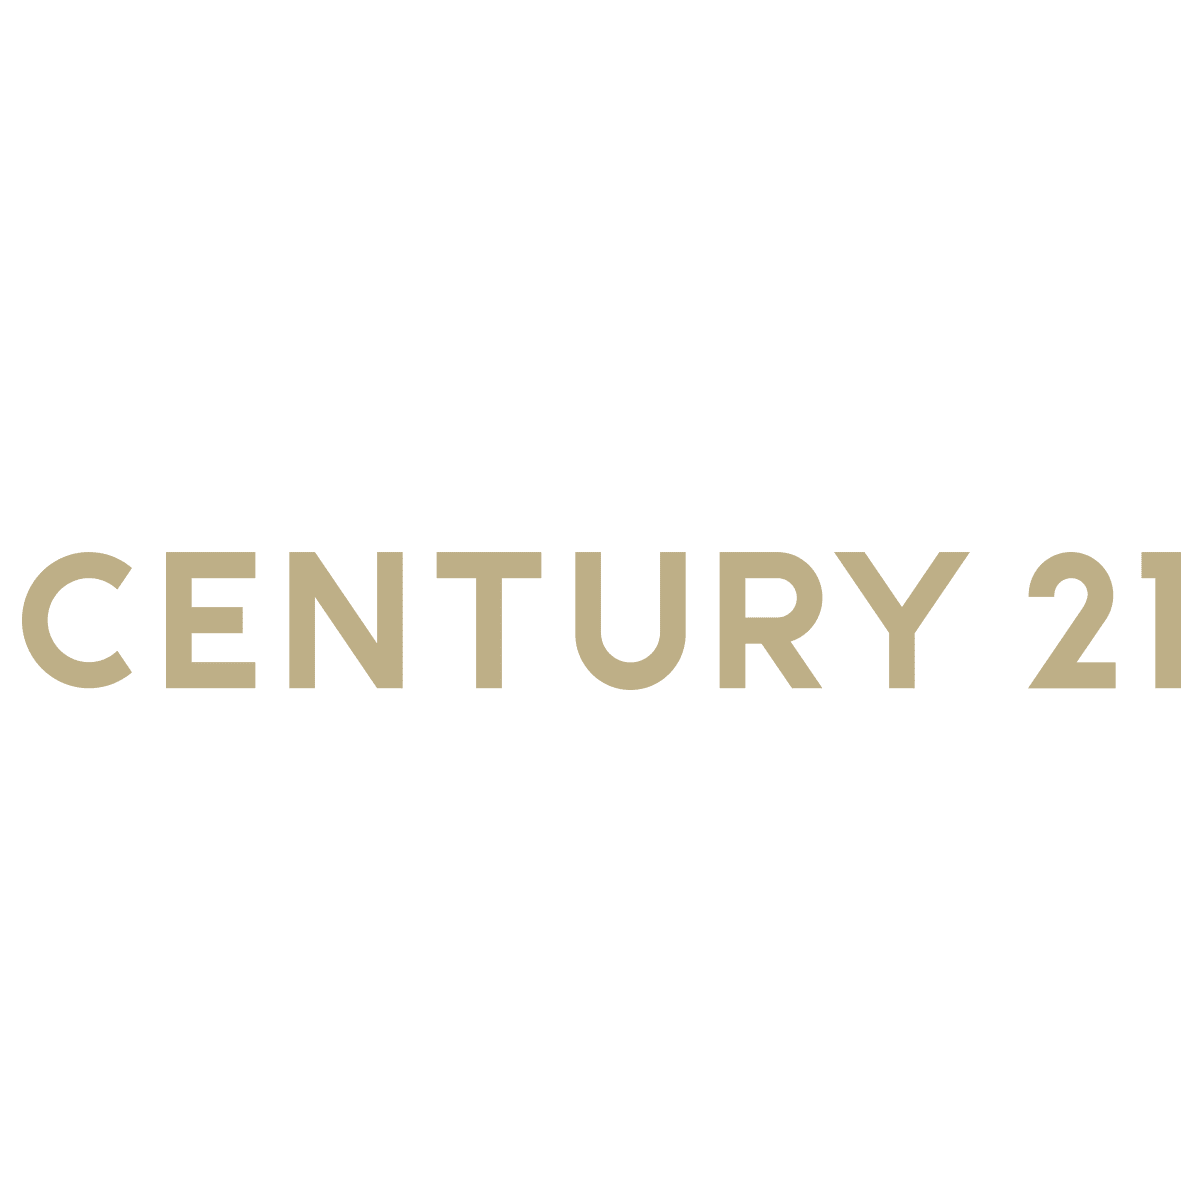 (c) Century21.com